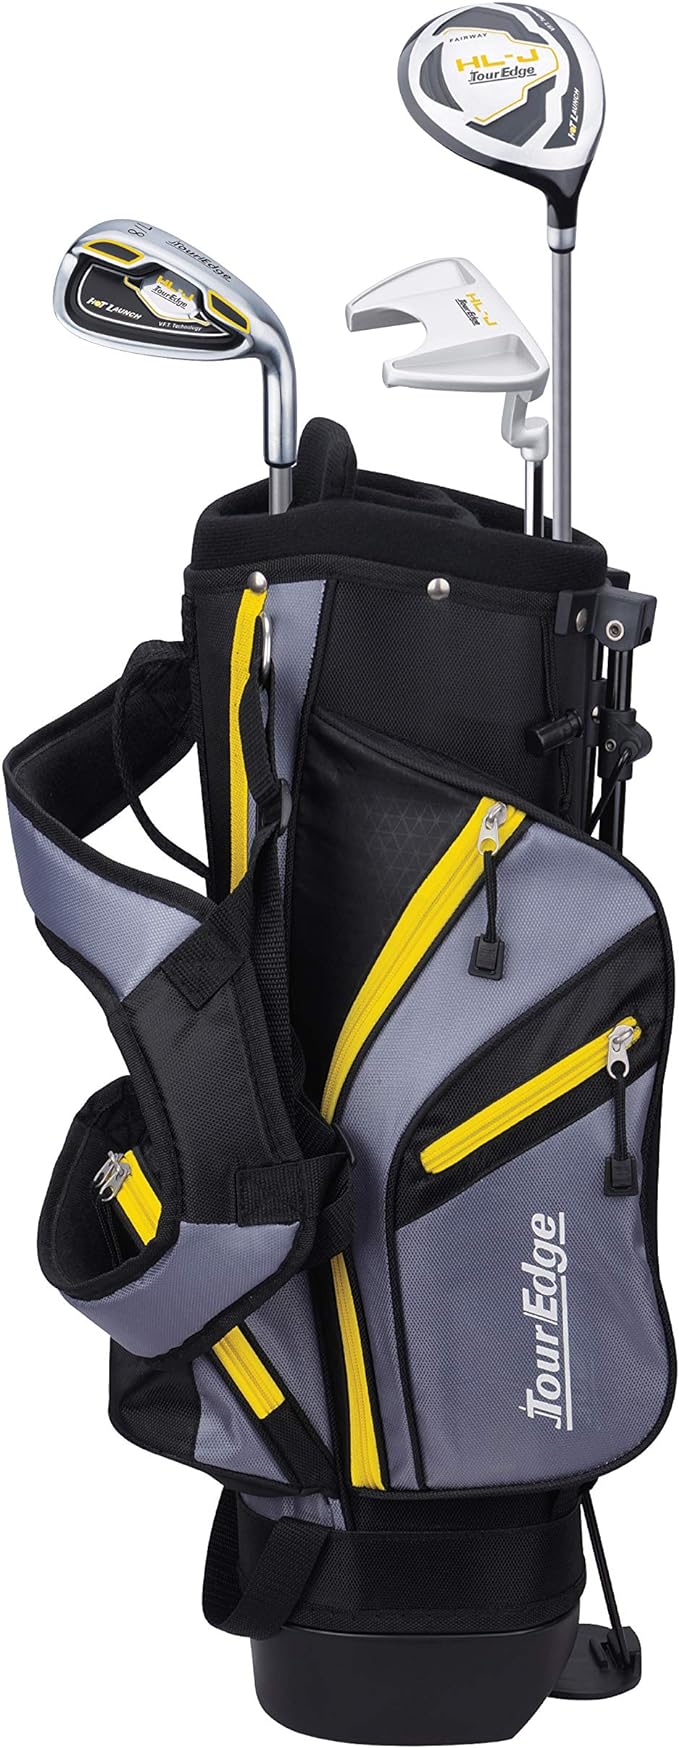 tour edge hl-j junior complete golf set w/ bag multiple sizes  ?tour edge b07fxqmt2r